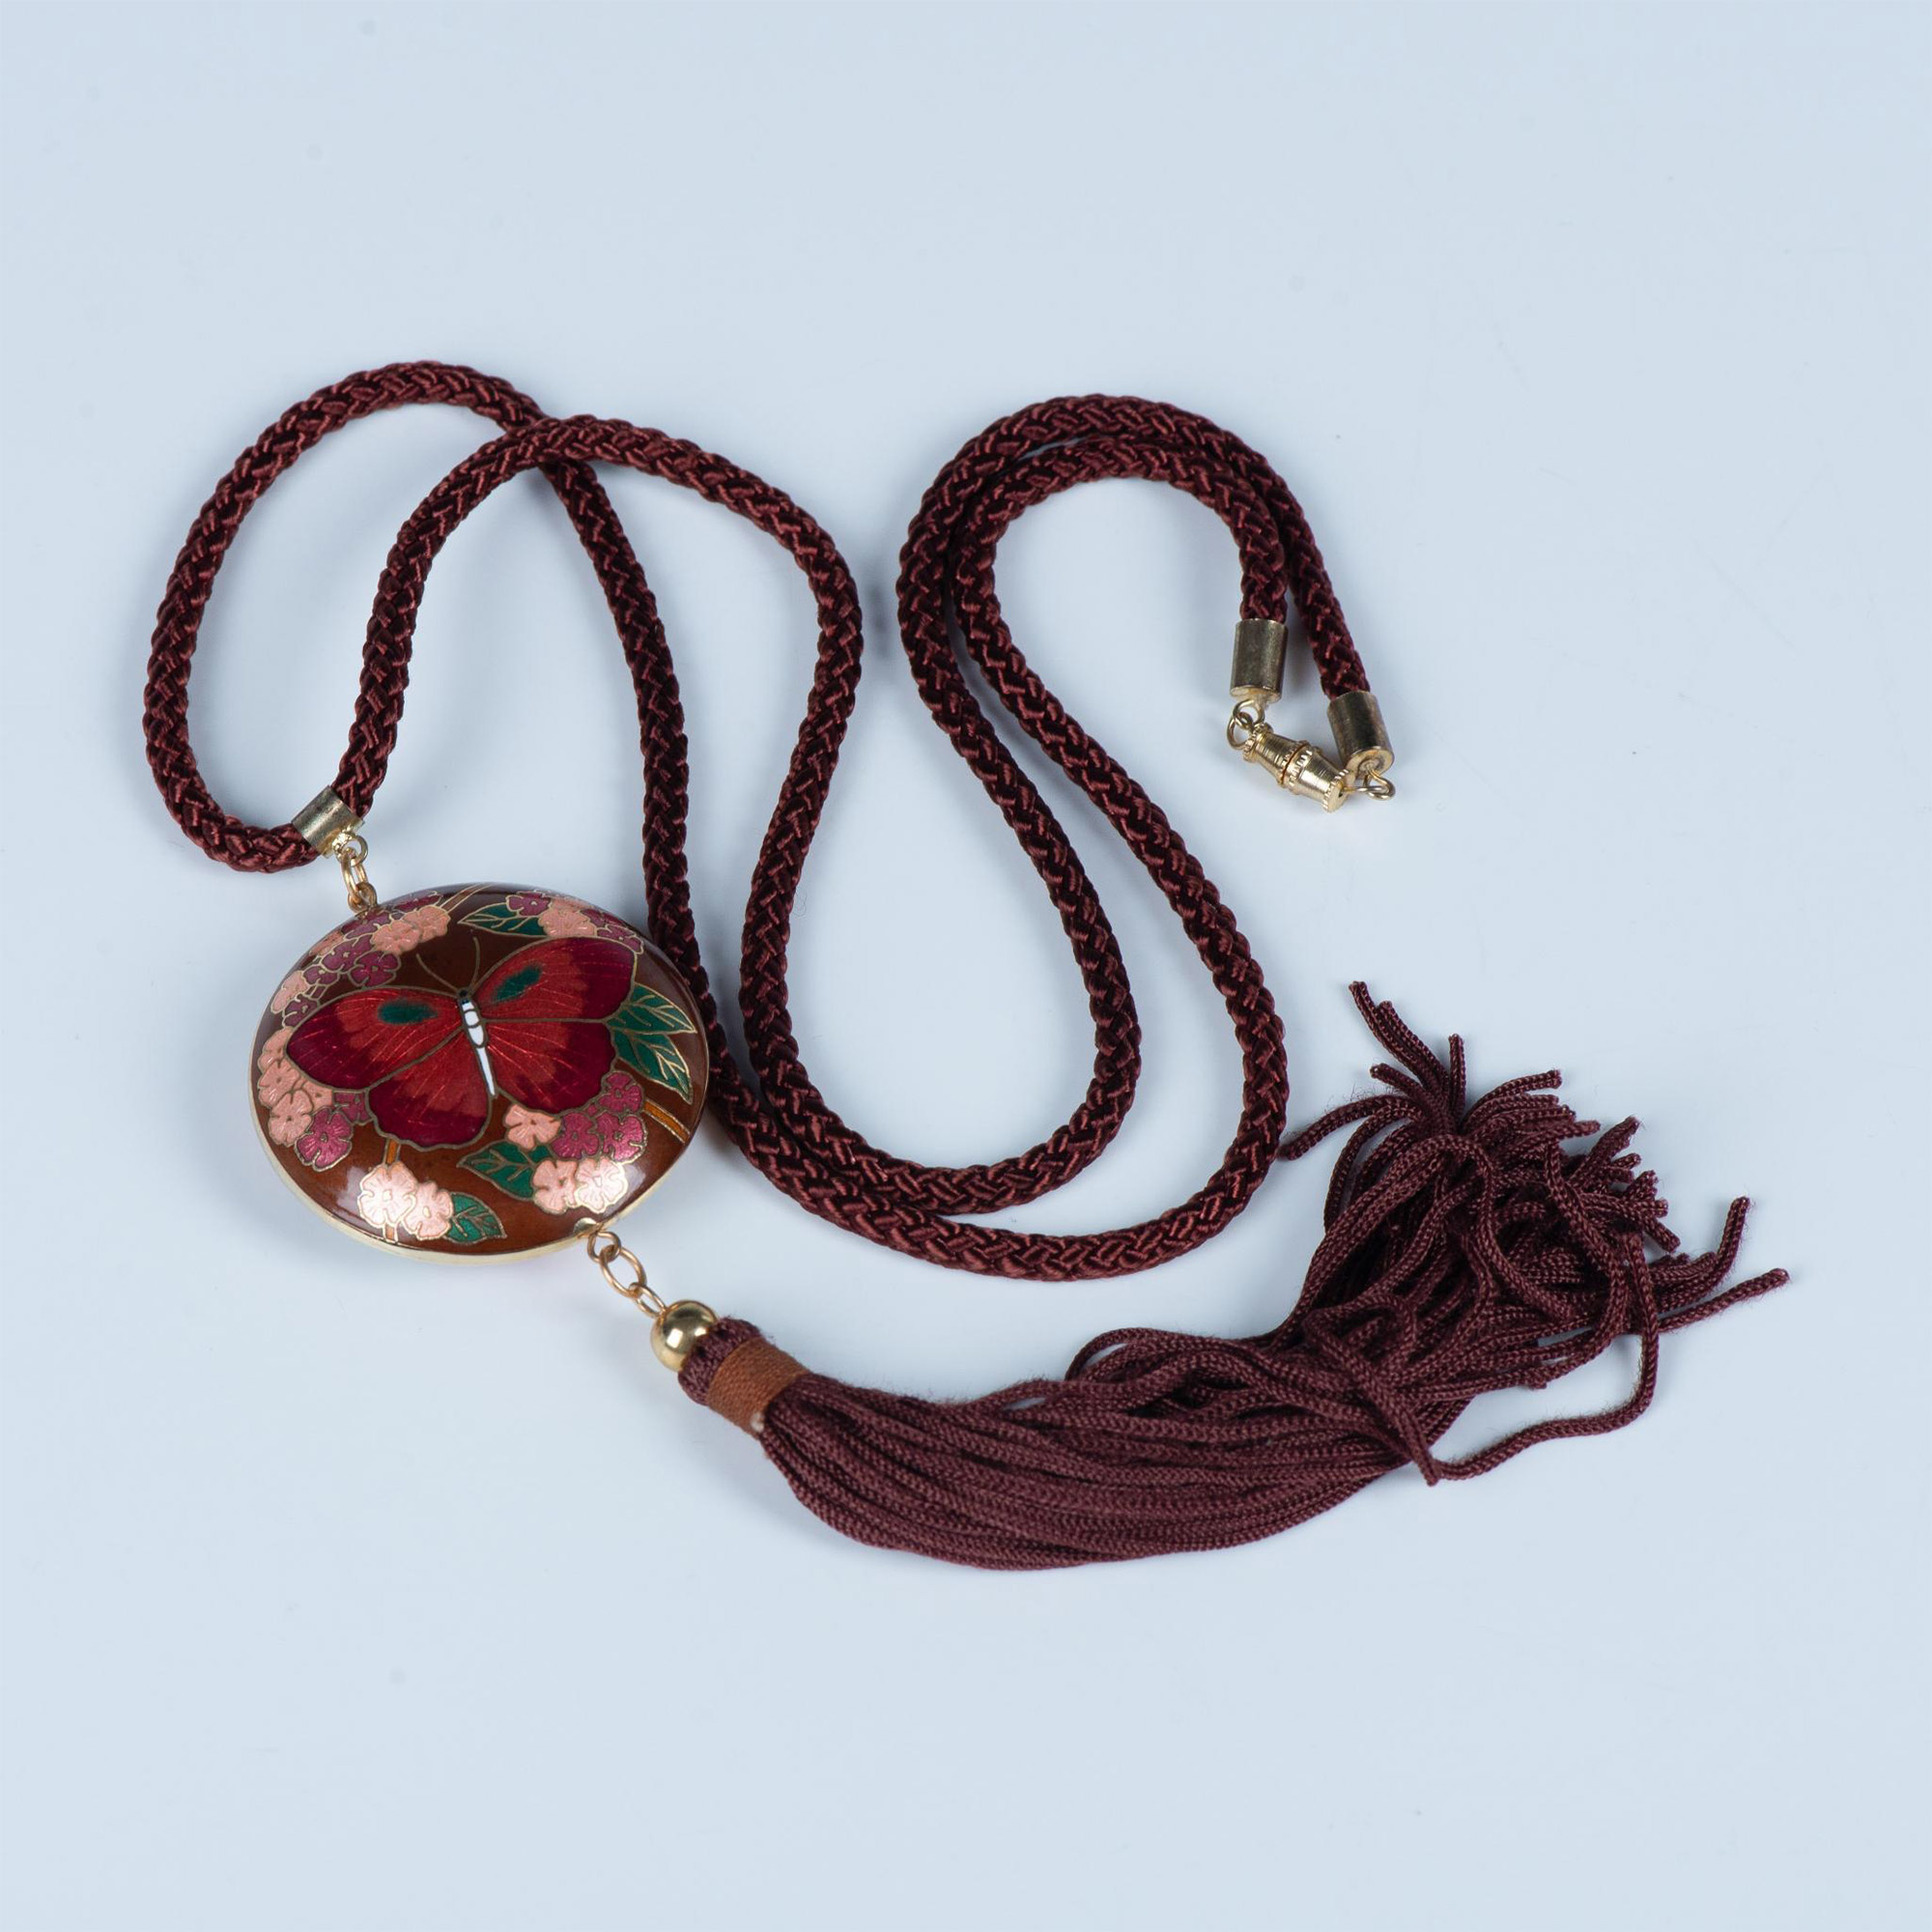 Vintage Detailed Cloisonne Enamel Butterfly Tassel Necklace - Image 3 of 3